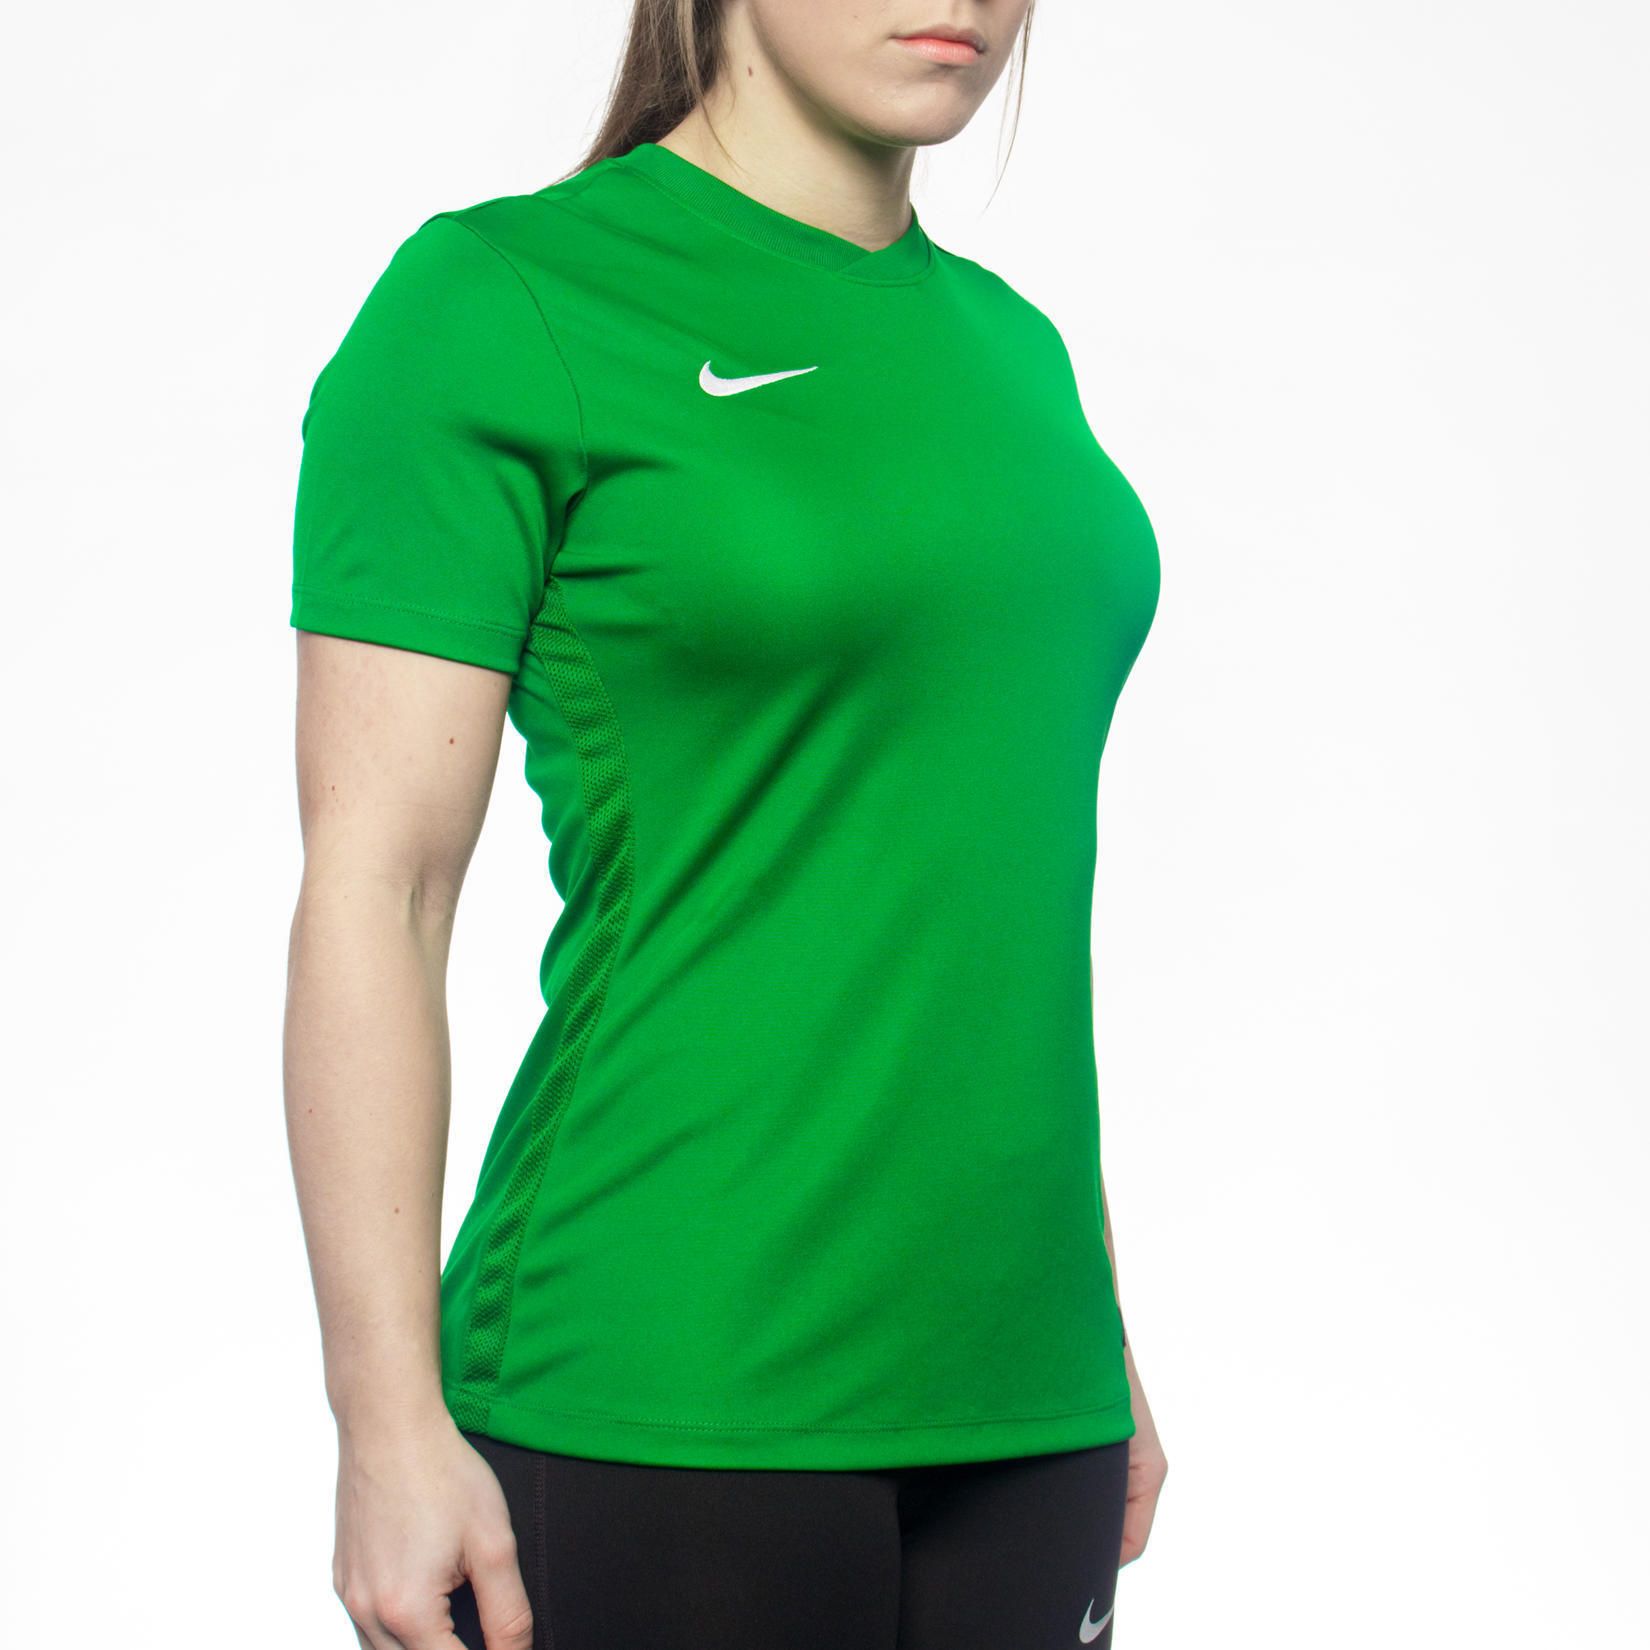 green nike shirt women's